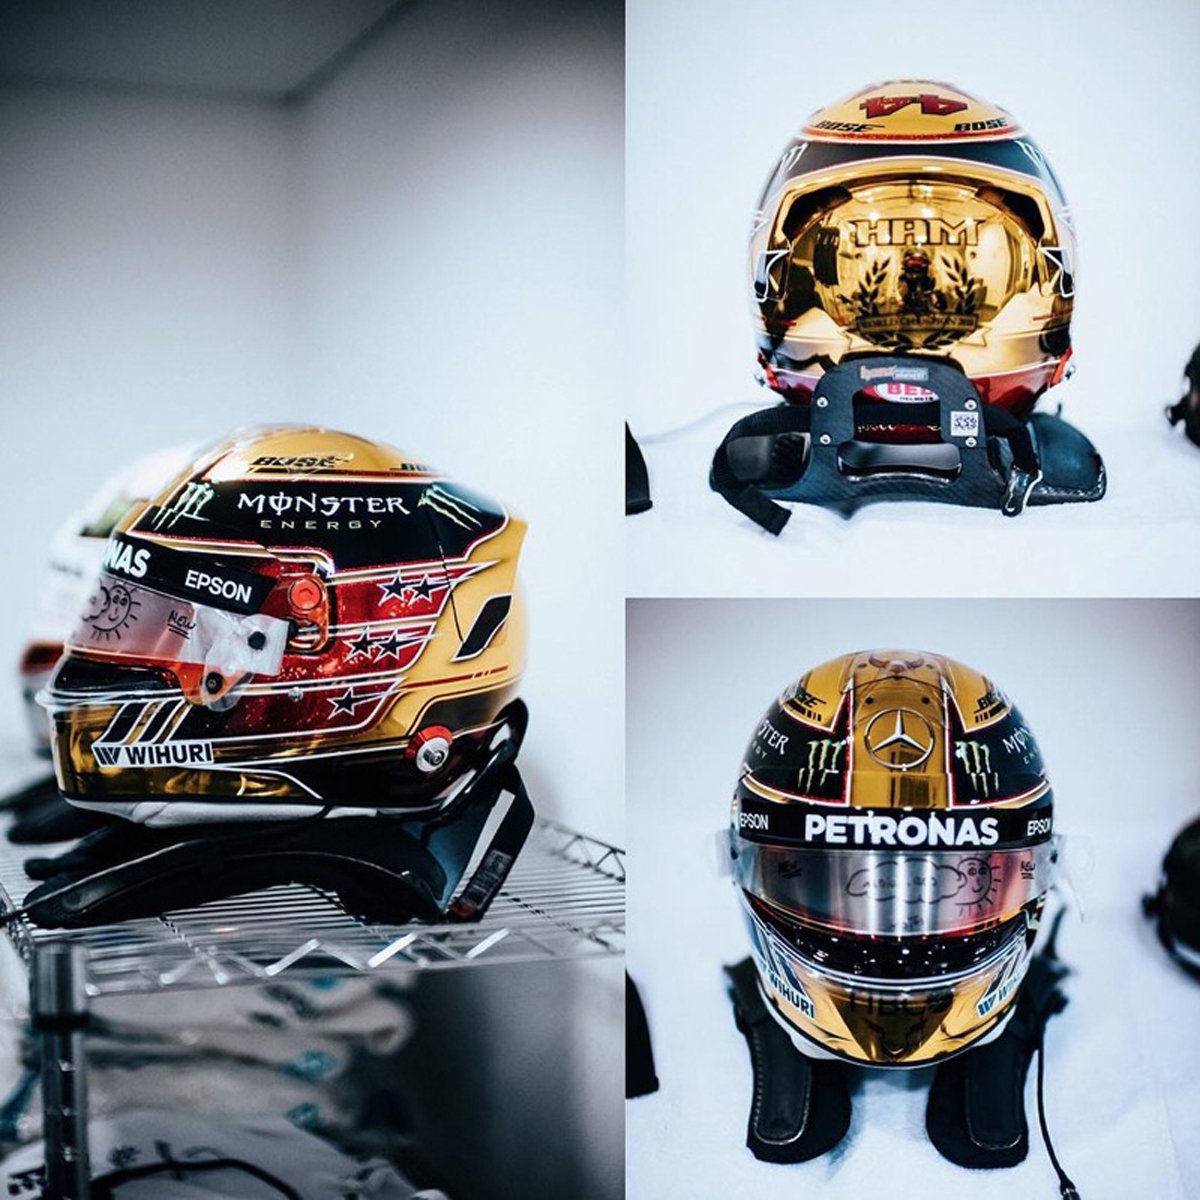 ルイス・ハミルトン 2018年F1アブダビGP ヘルメット